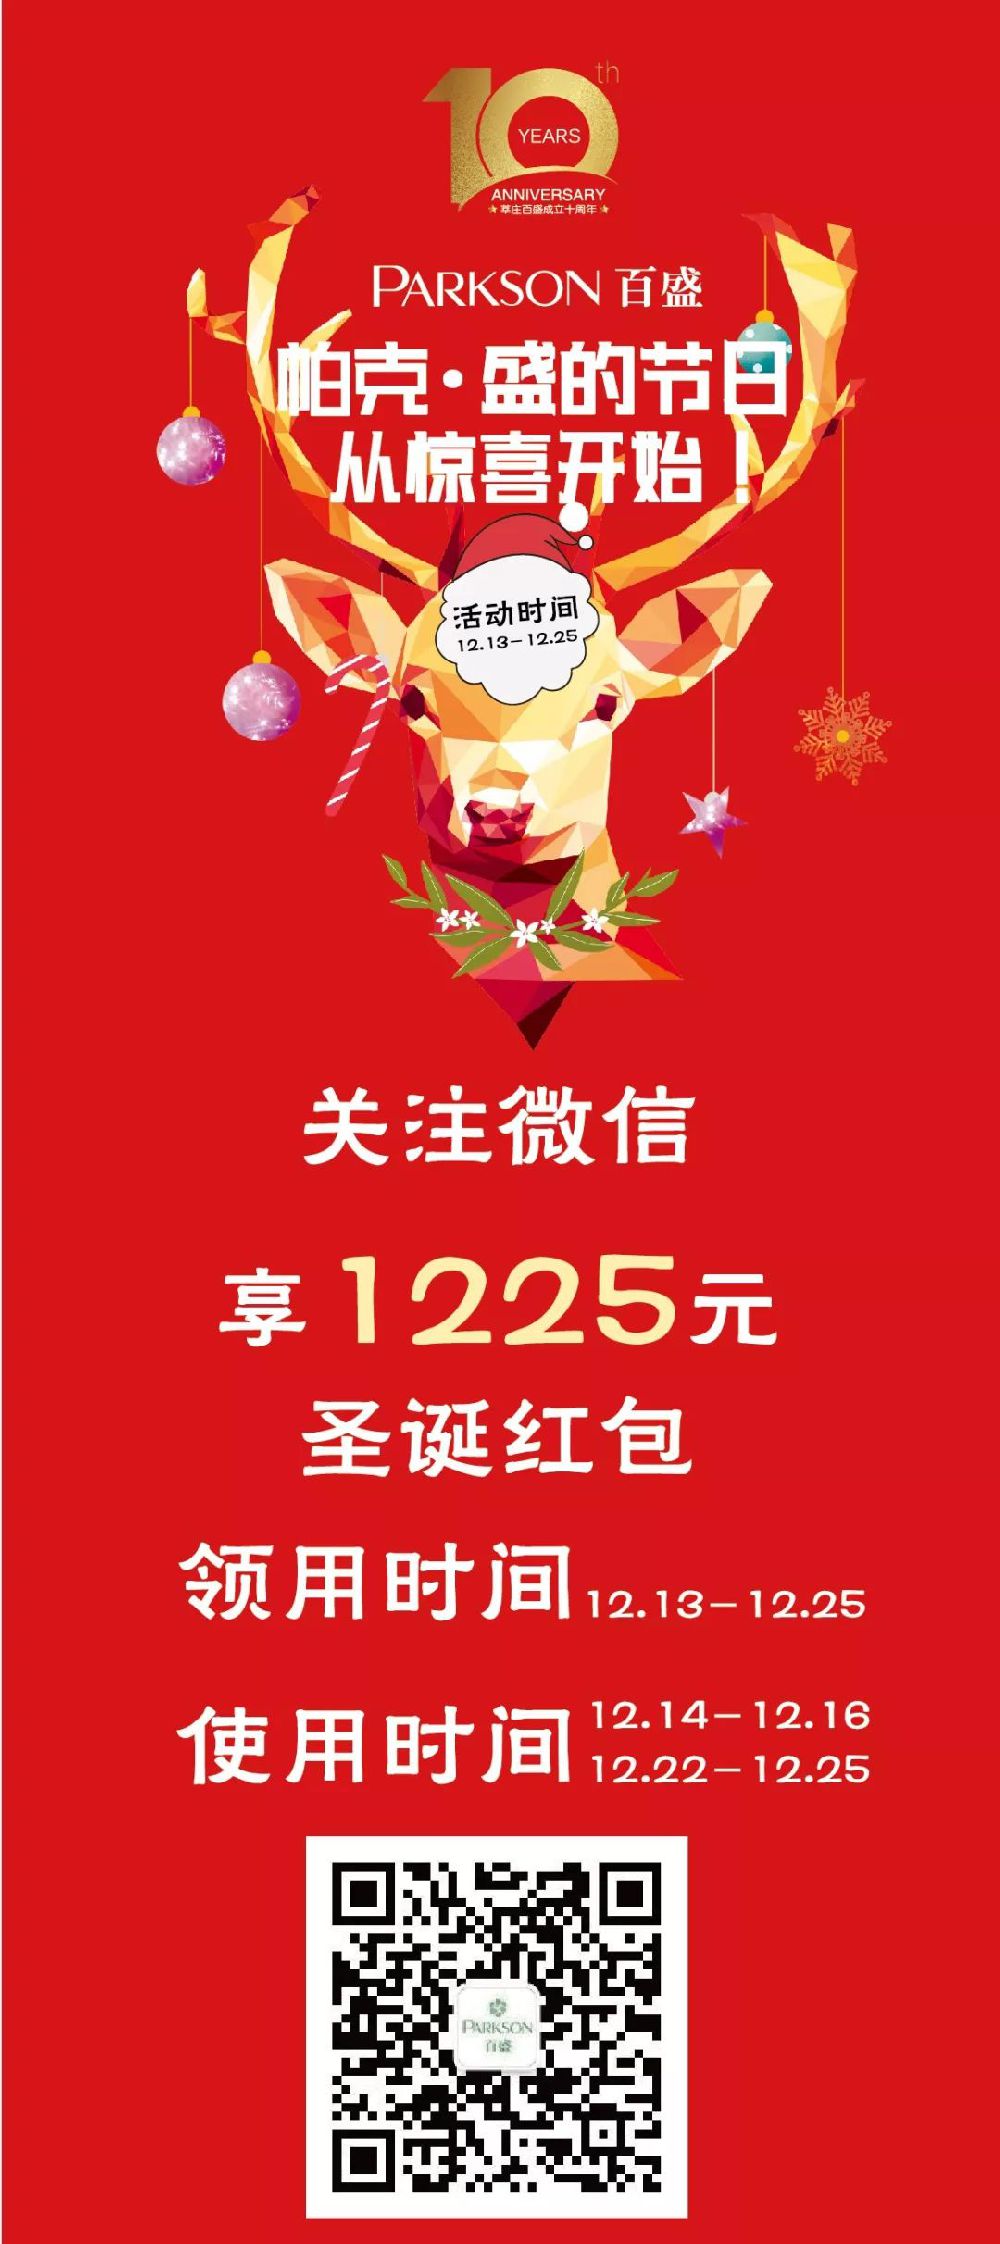 上海莘庄百盛2018圣诞季折扣 服饰满99减50